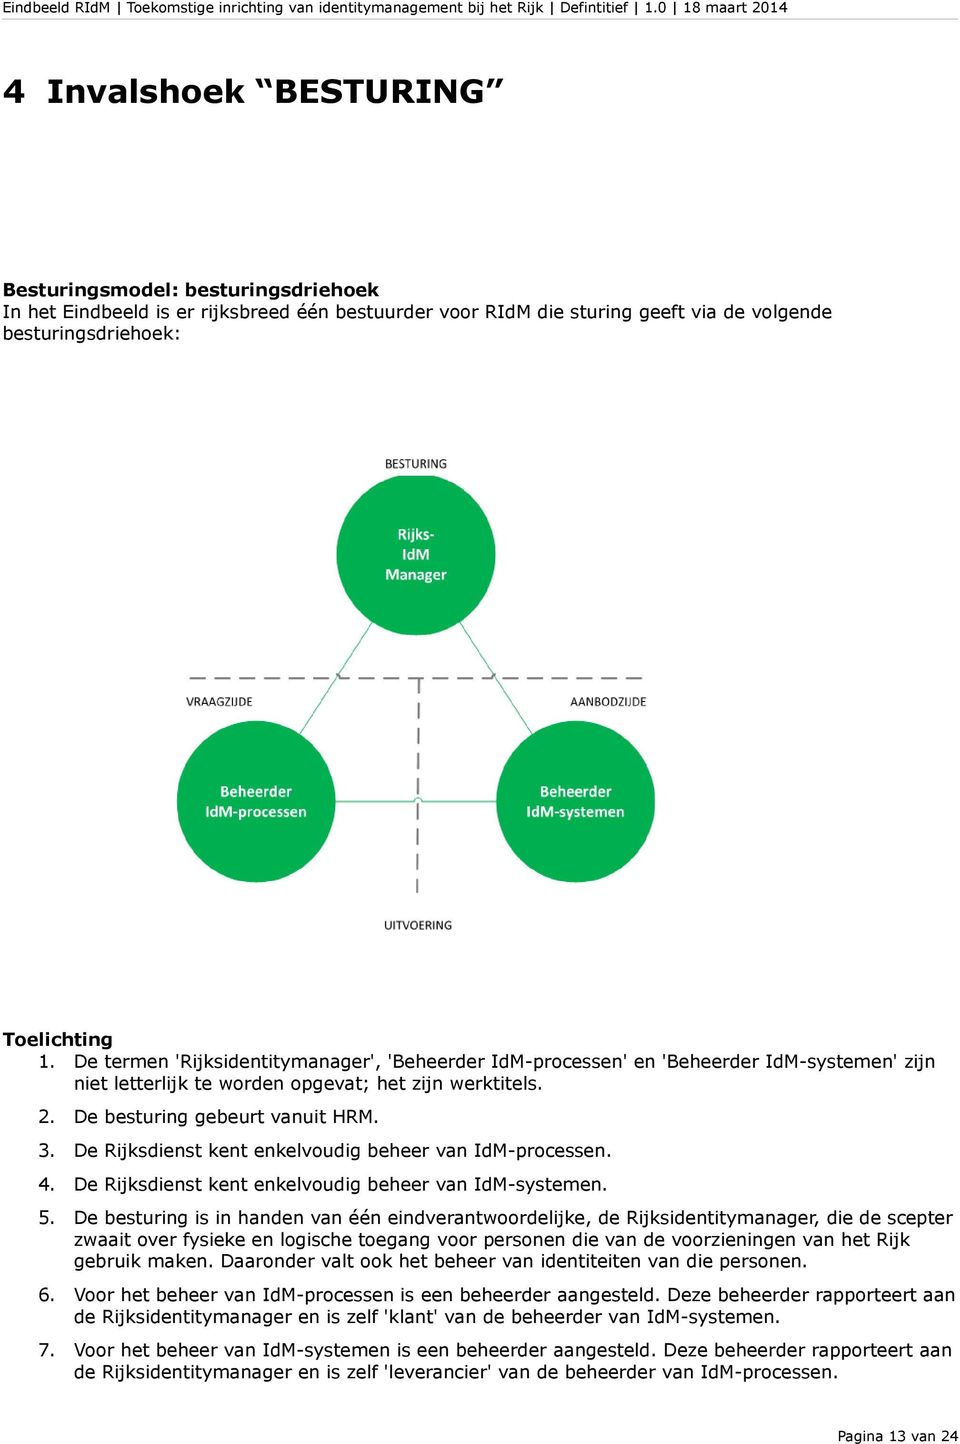 De Rijksdienst kent enkelvoudig beheer van IdM-processen. 4. De Rijksdienst kent enkelvoudig beheer van IdM-systemen. 5.